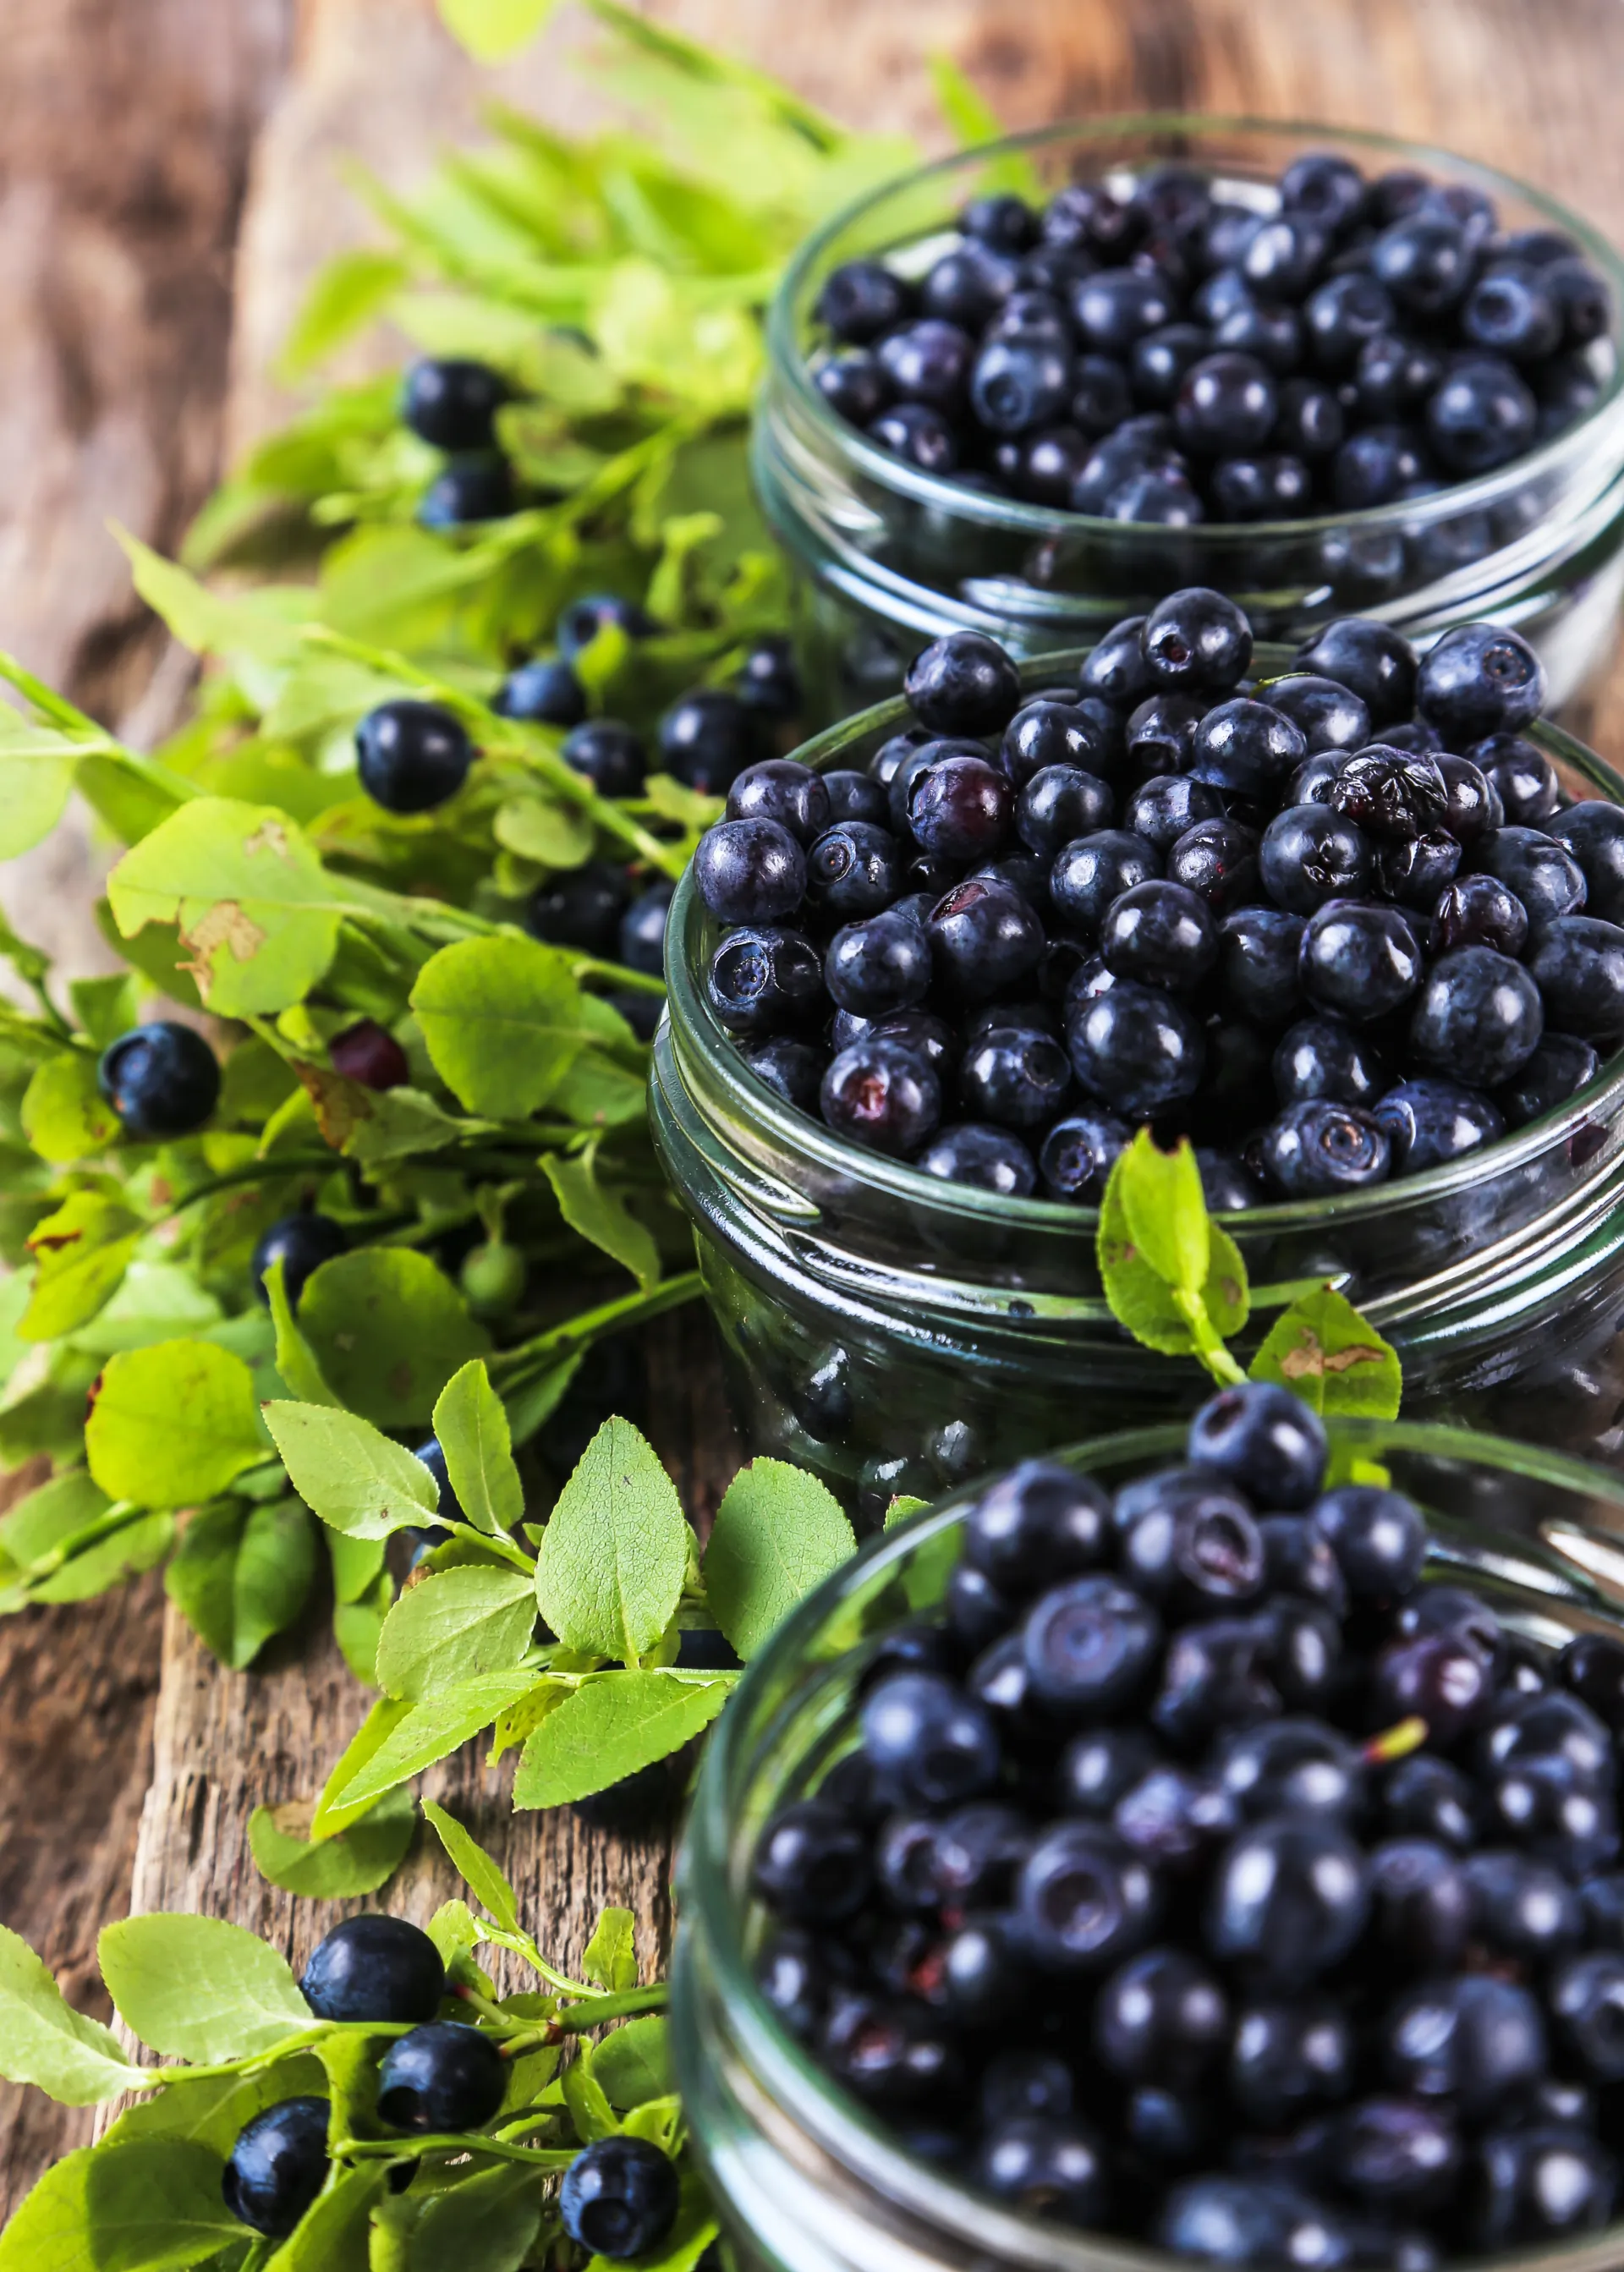 Frozen organic wild blueberries